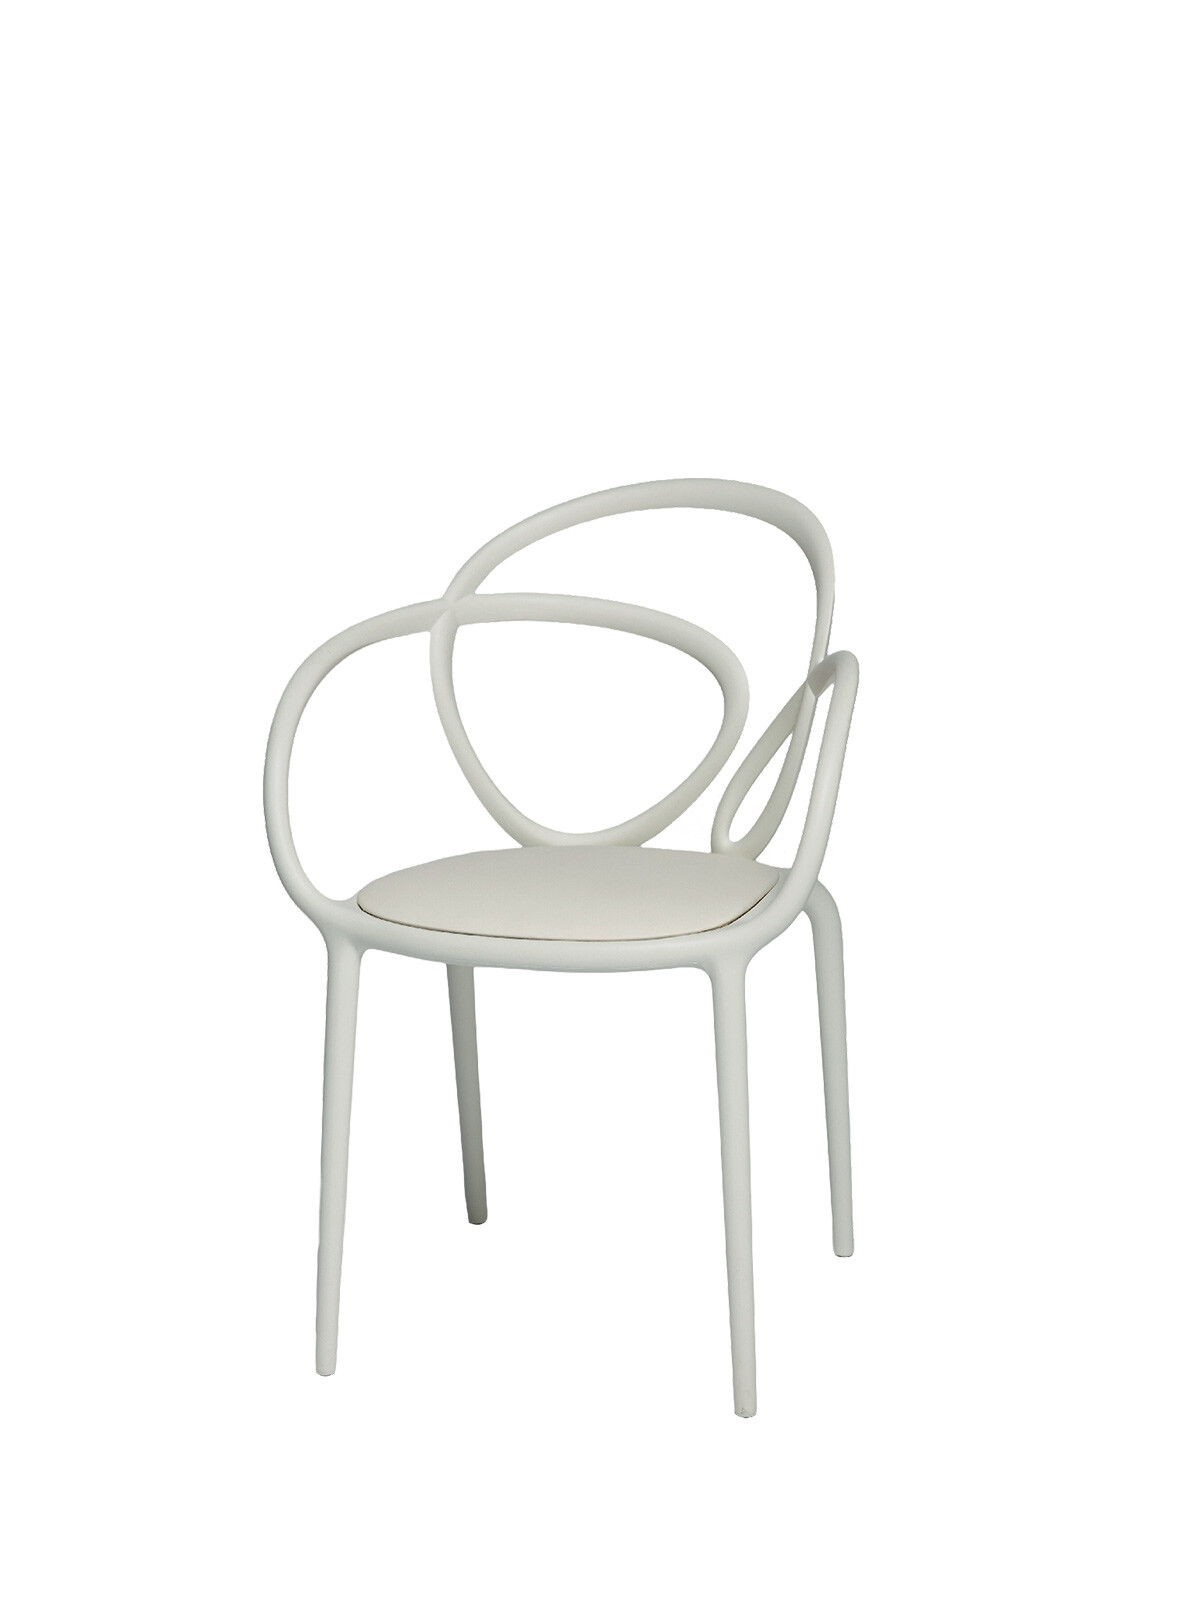 Loop chair white with cushionn BLANCO